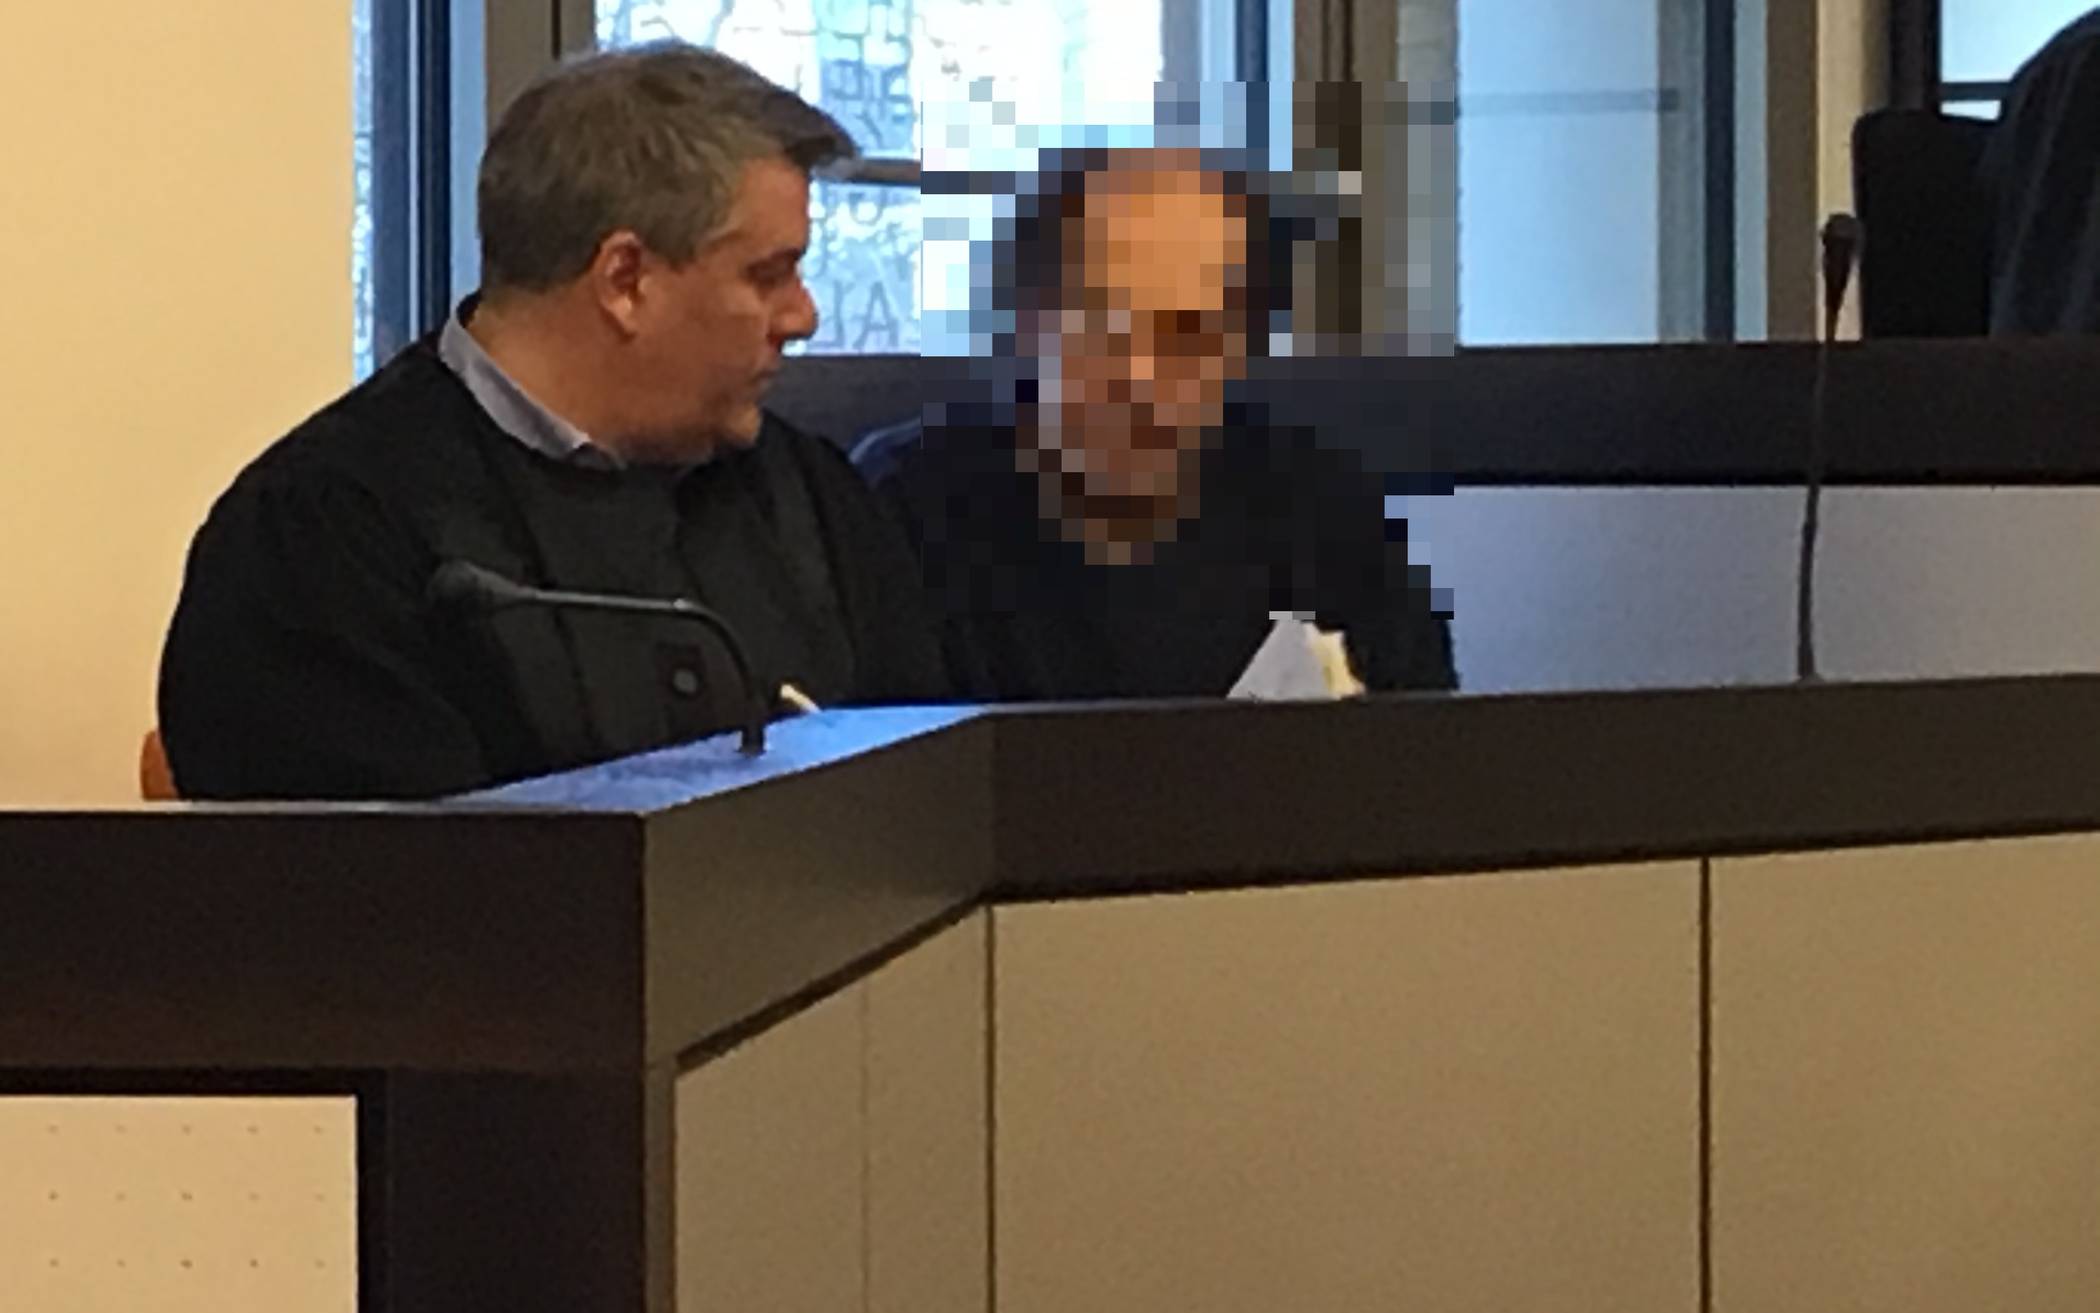  Der Angeklagte, Bernd U., mit seinem Anwalt.  